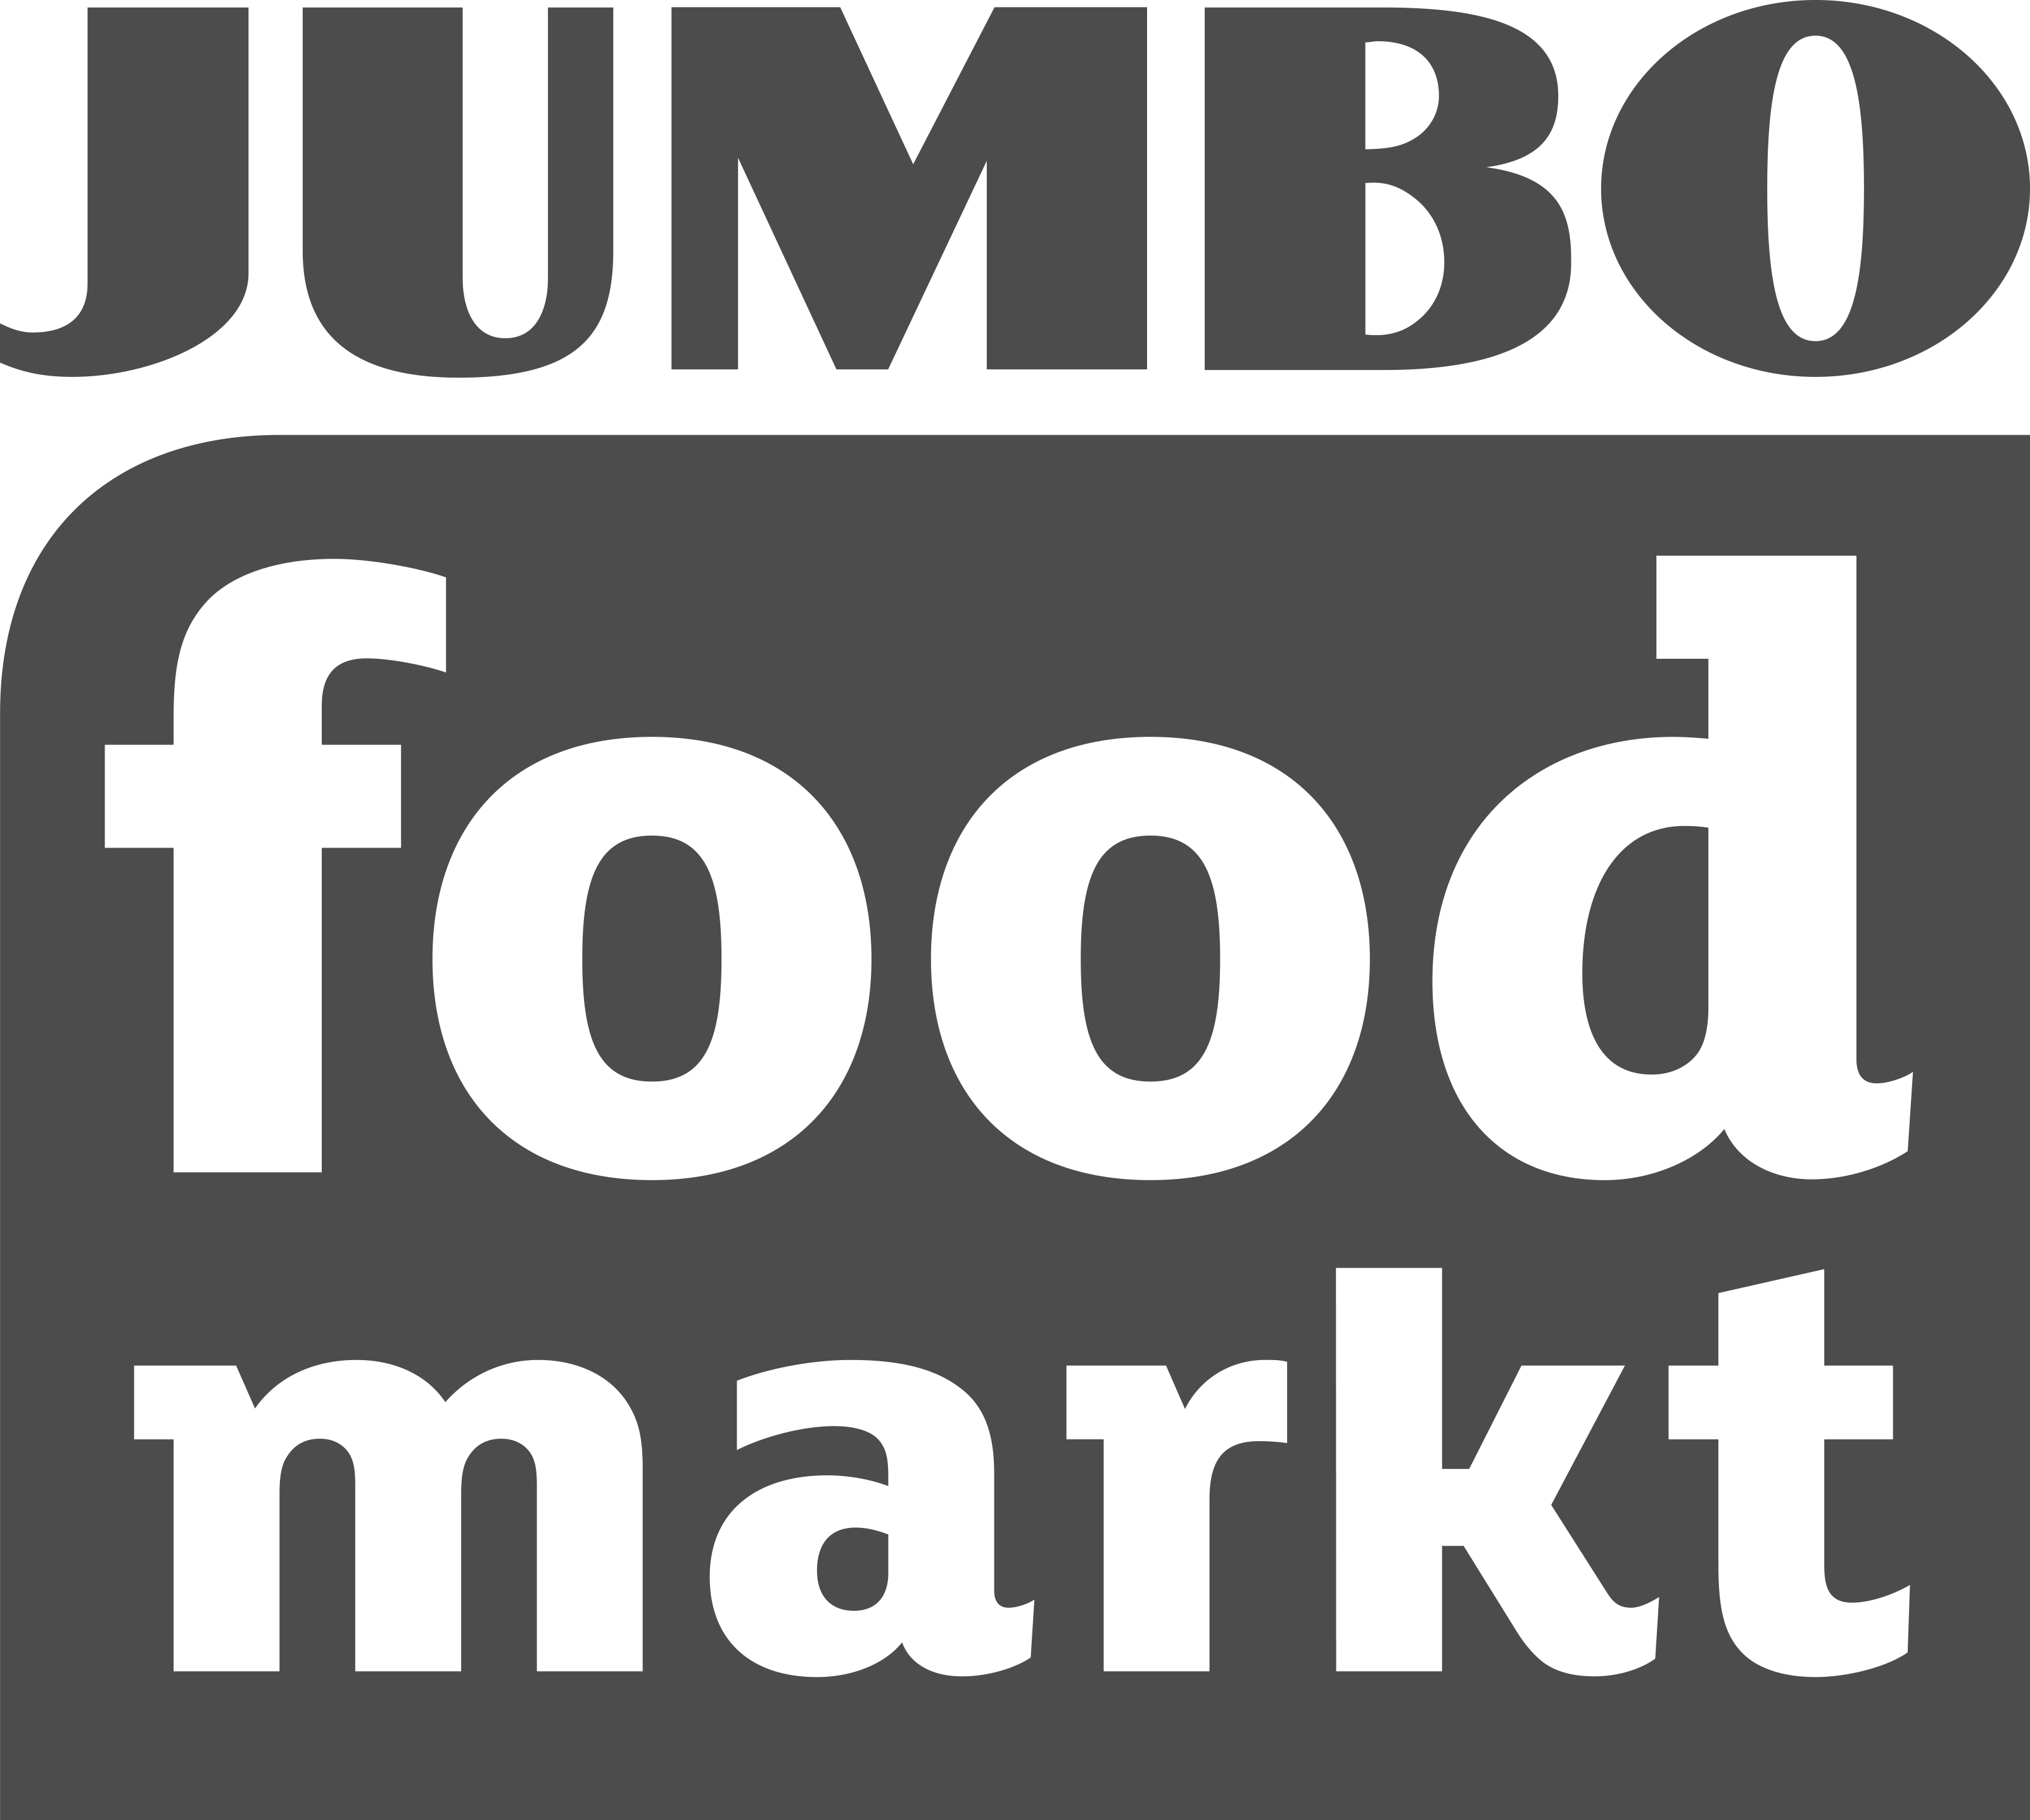 Maatschappelijk partners Jumbo Foodmarkt